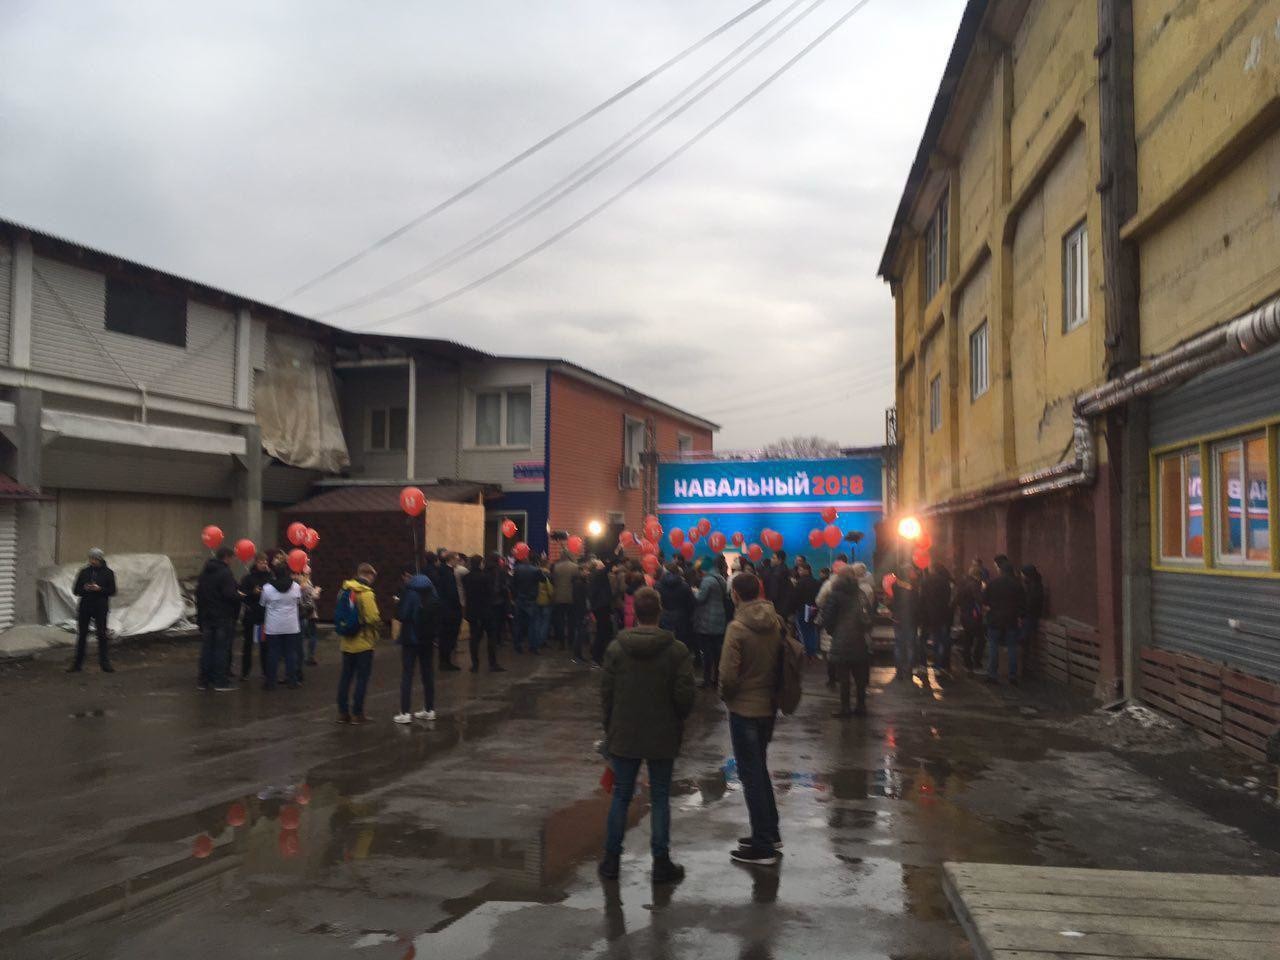 На митинге Навального в Иркутске. Фото прислал гражданский журналист через приложение LifeCorr